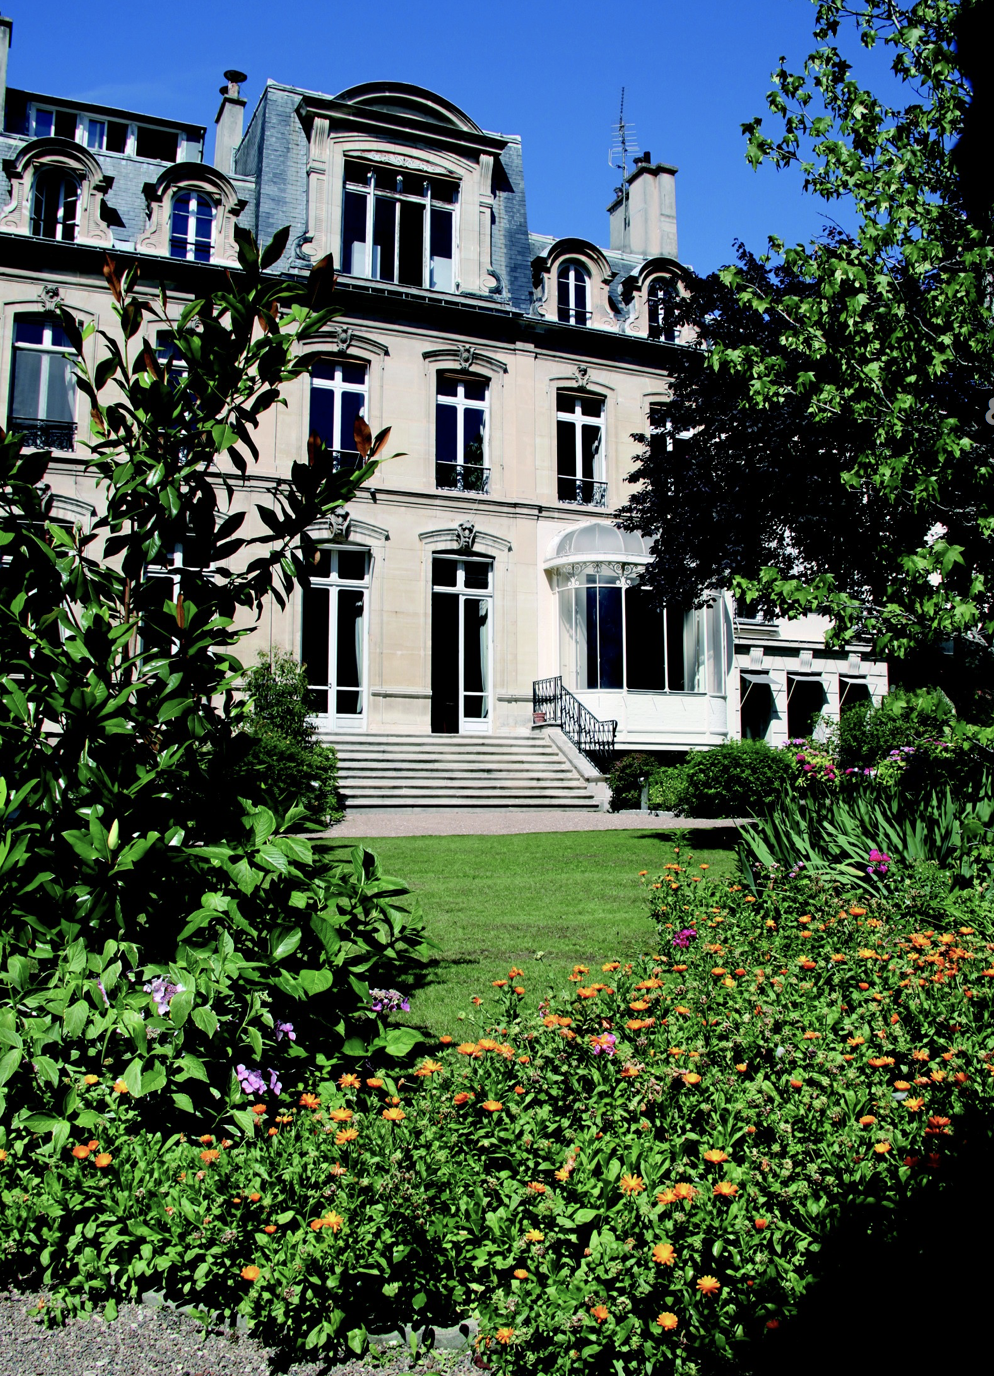 L’Hôtel de Blémont, siège de la SACD, sera exceptionnellement accessible à tous les curieux durant deux jours